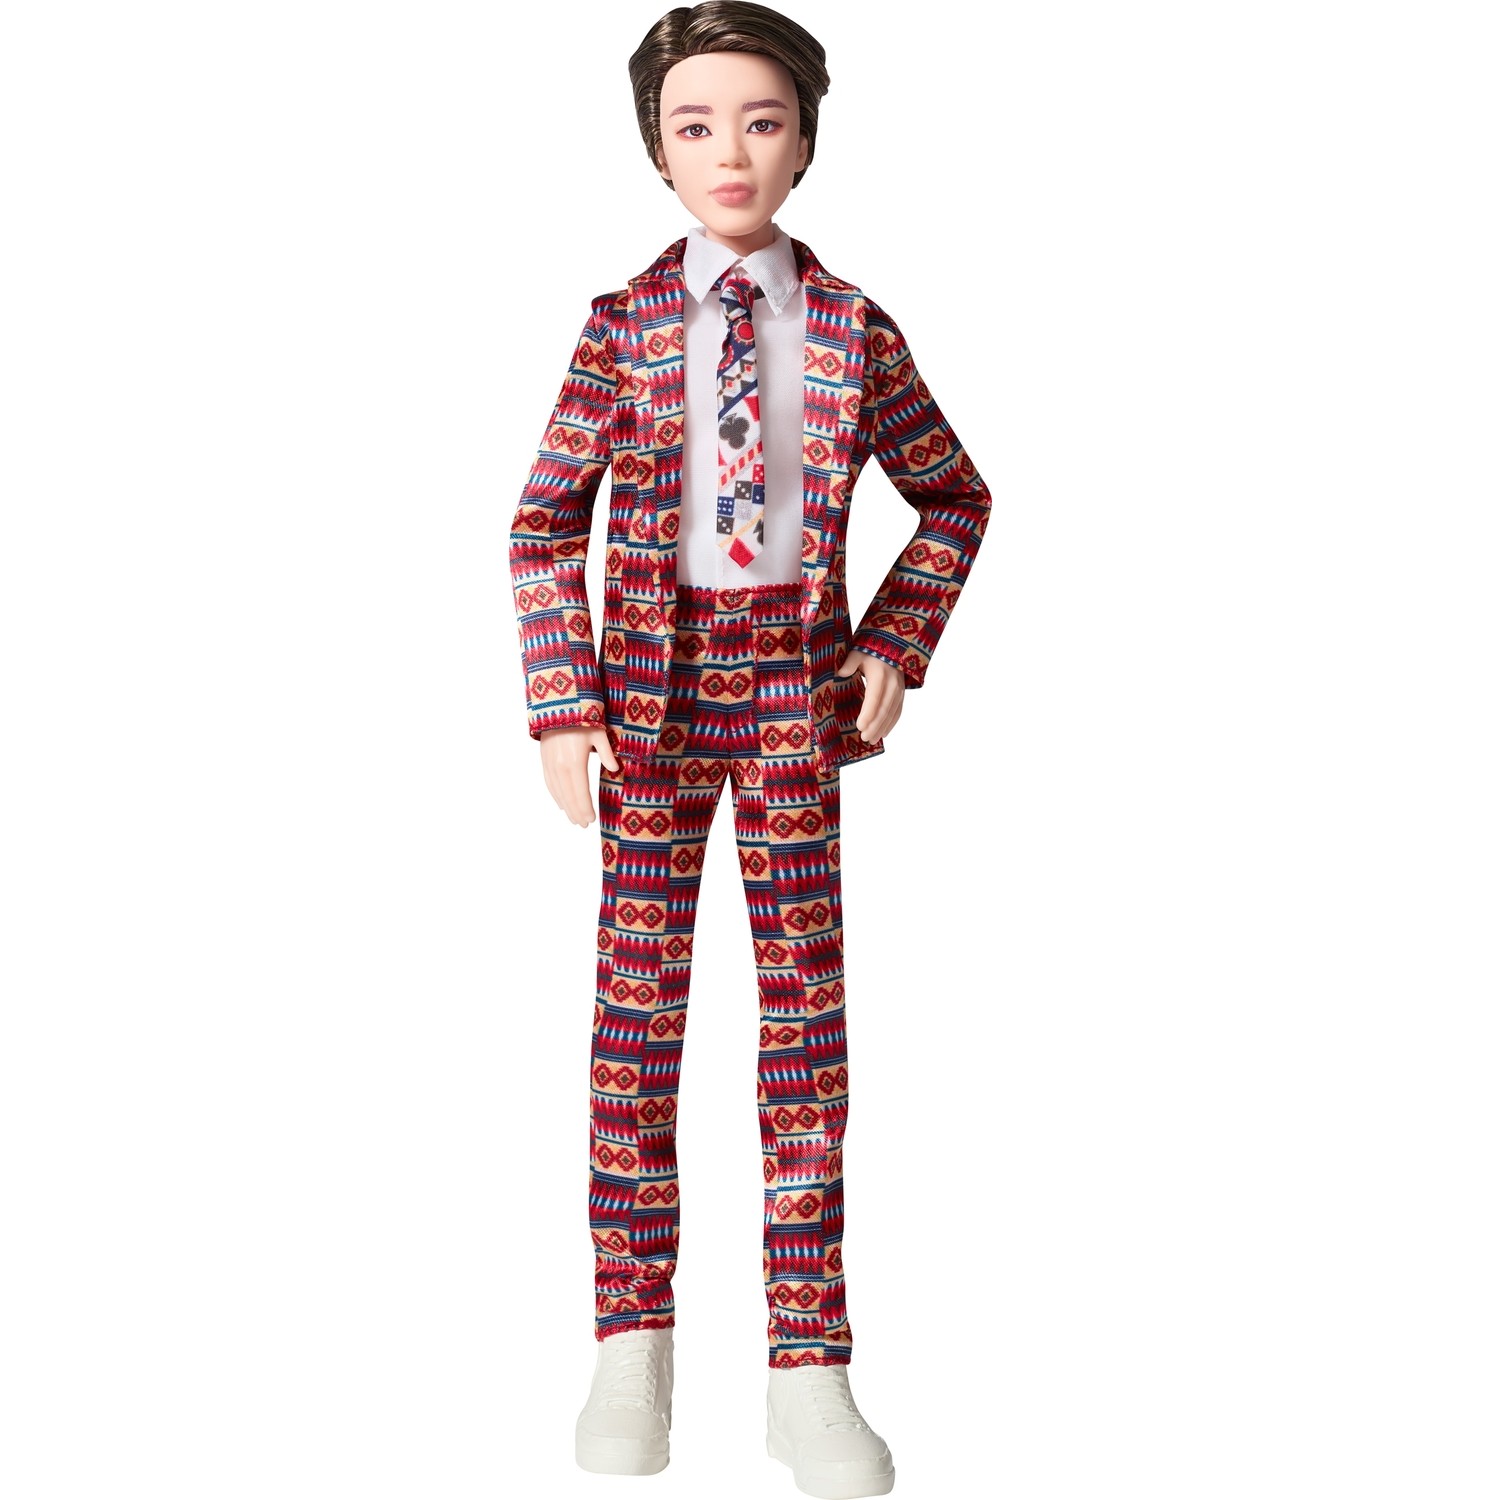 Кукла Jimin Fashion Doll певец из группы BTS кукла mattel bts prestige v 29 см gkd01